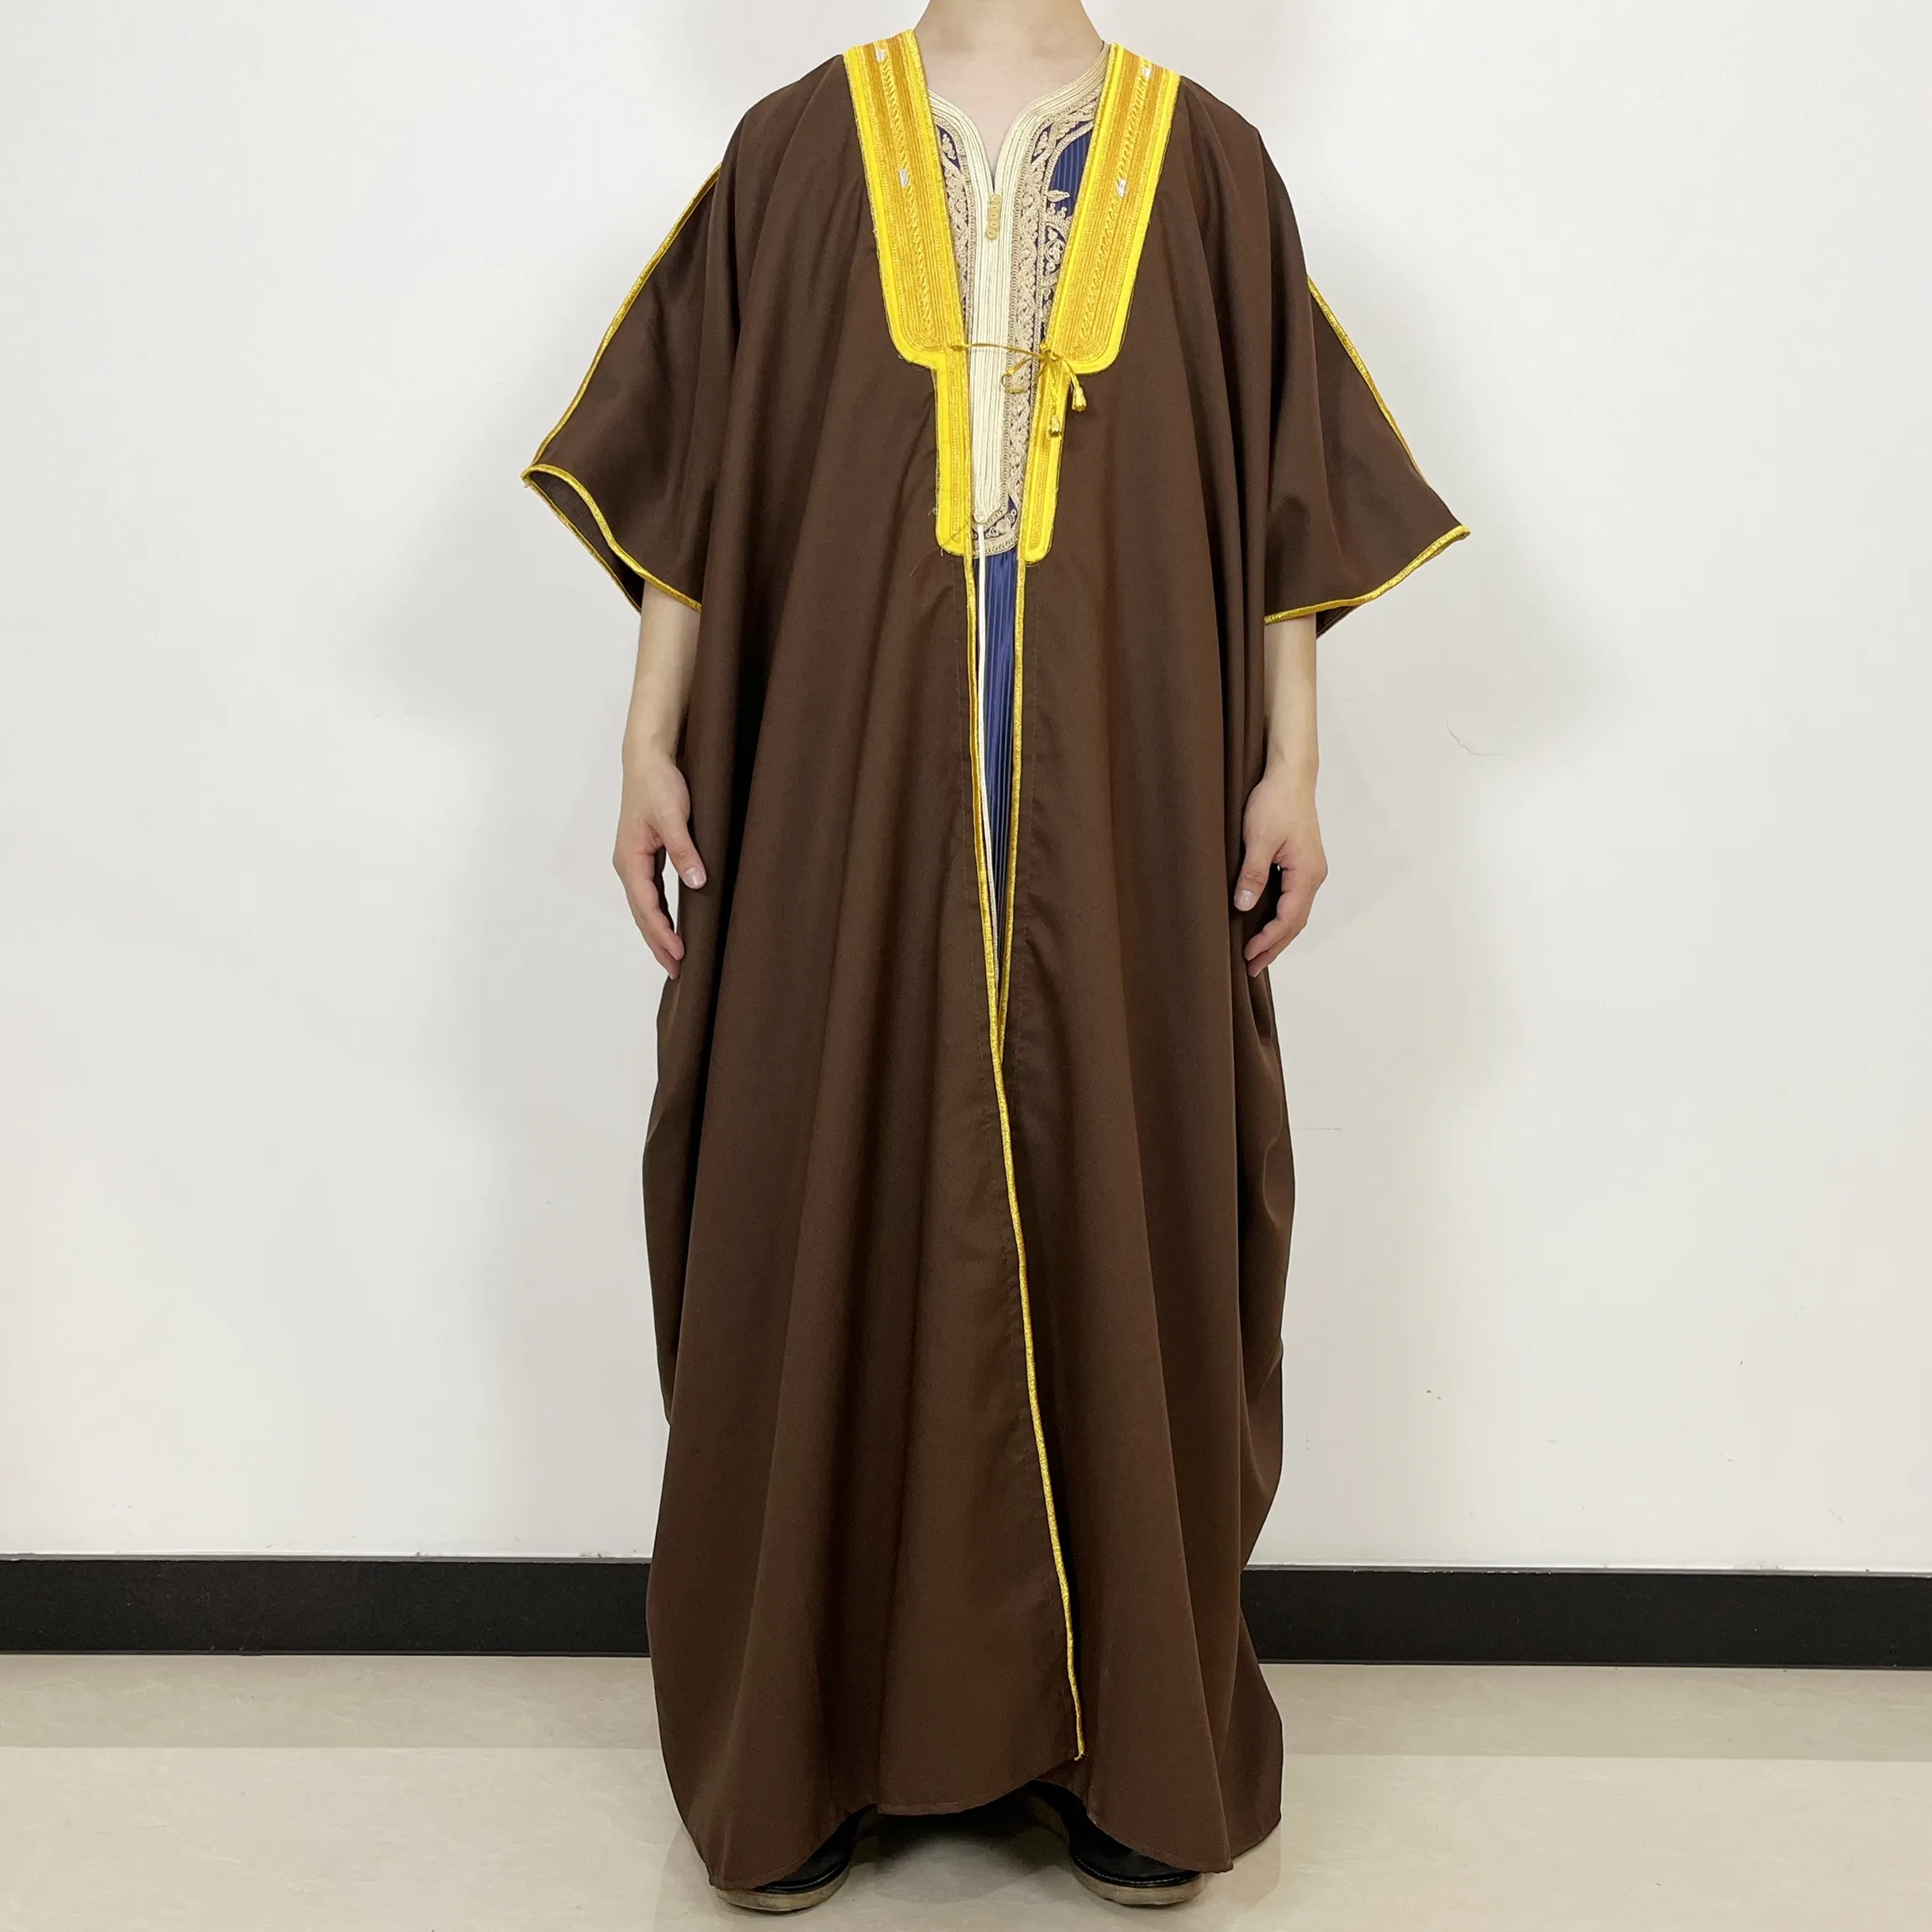 Muslim Islam Dubai pria sifon Bisht Abaya Lebaran Arab pidato seragam Thobe pria jubah Saudi Pusht jubah